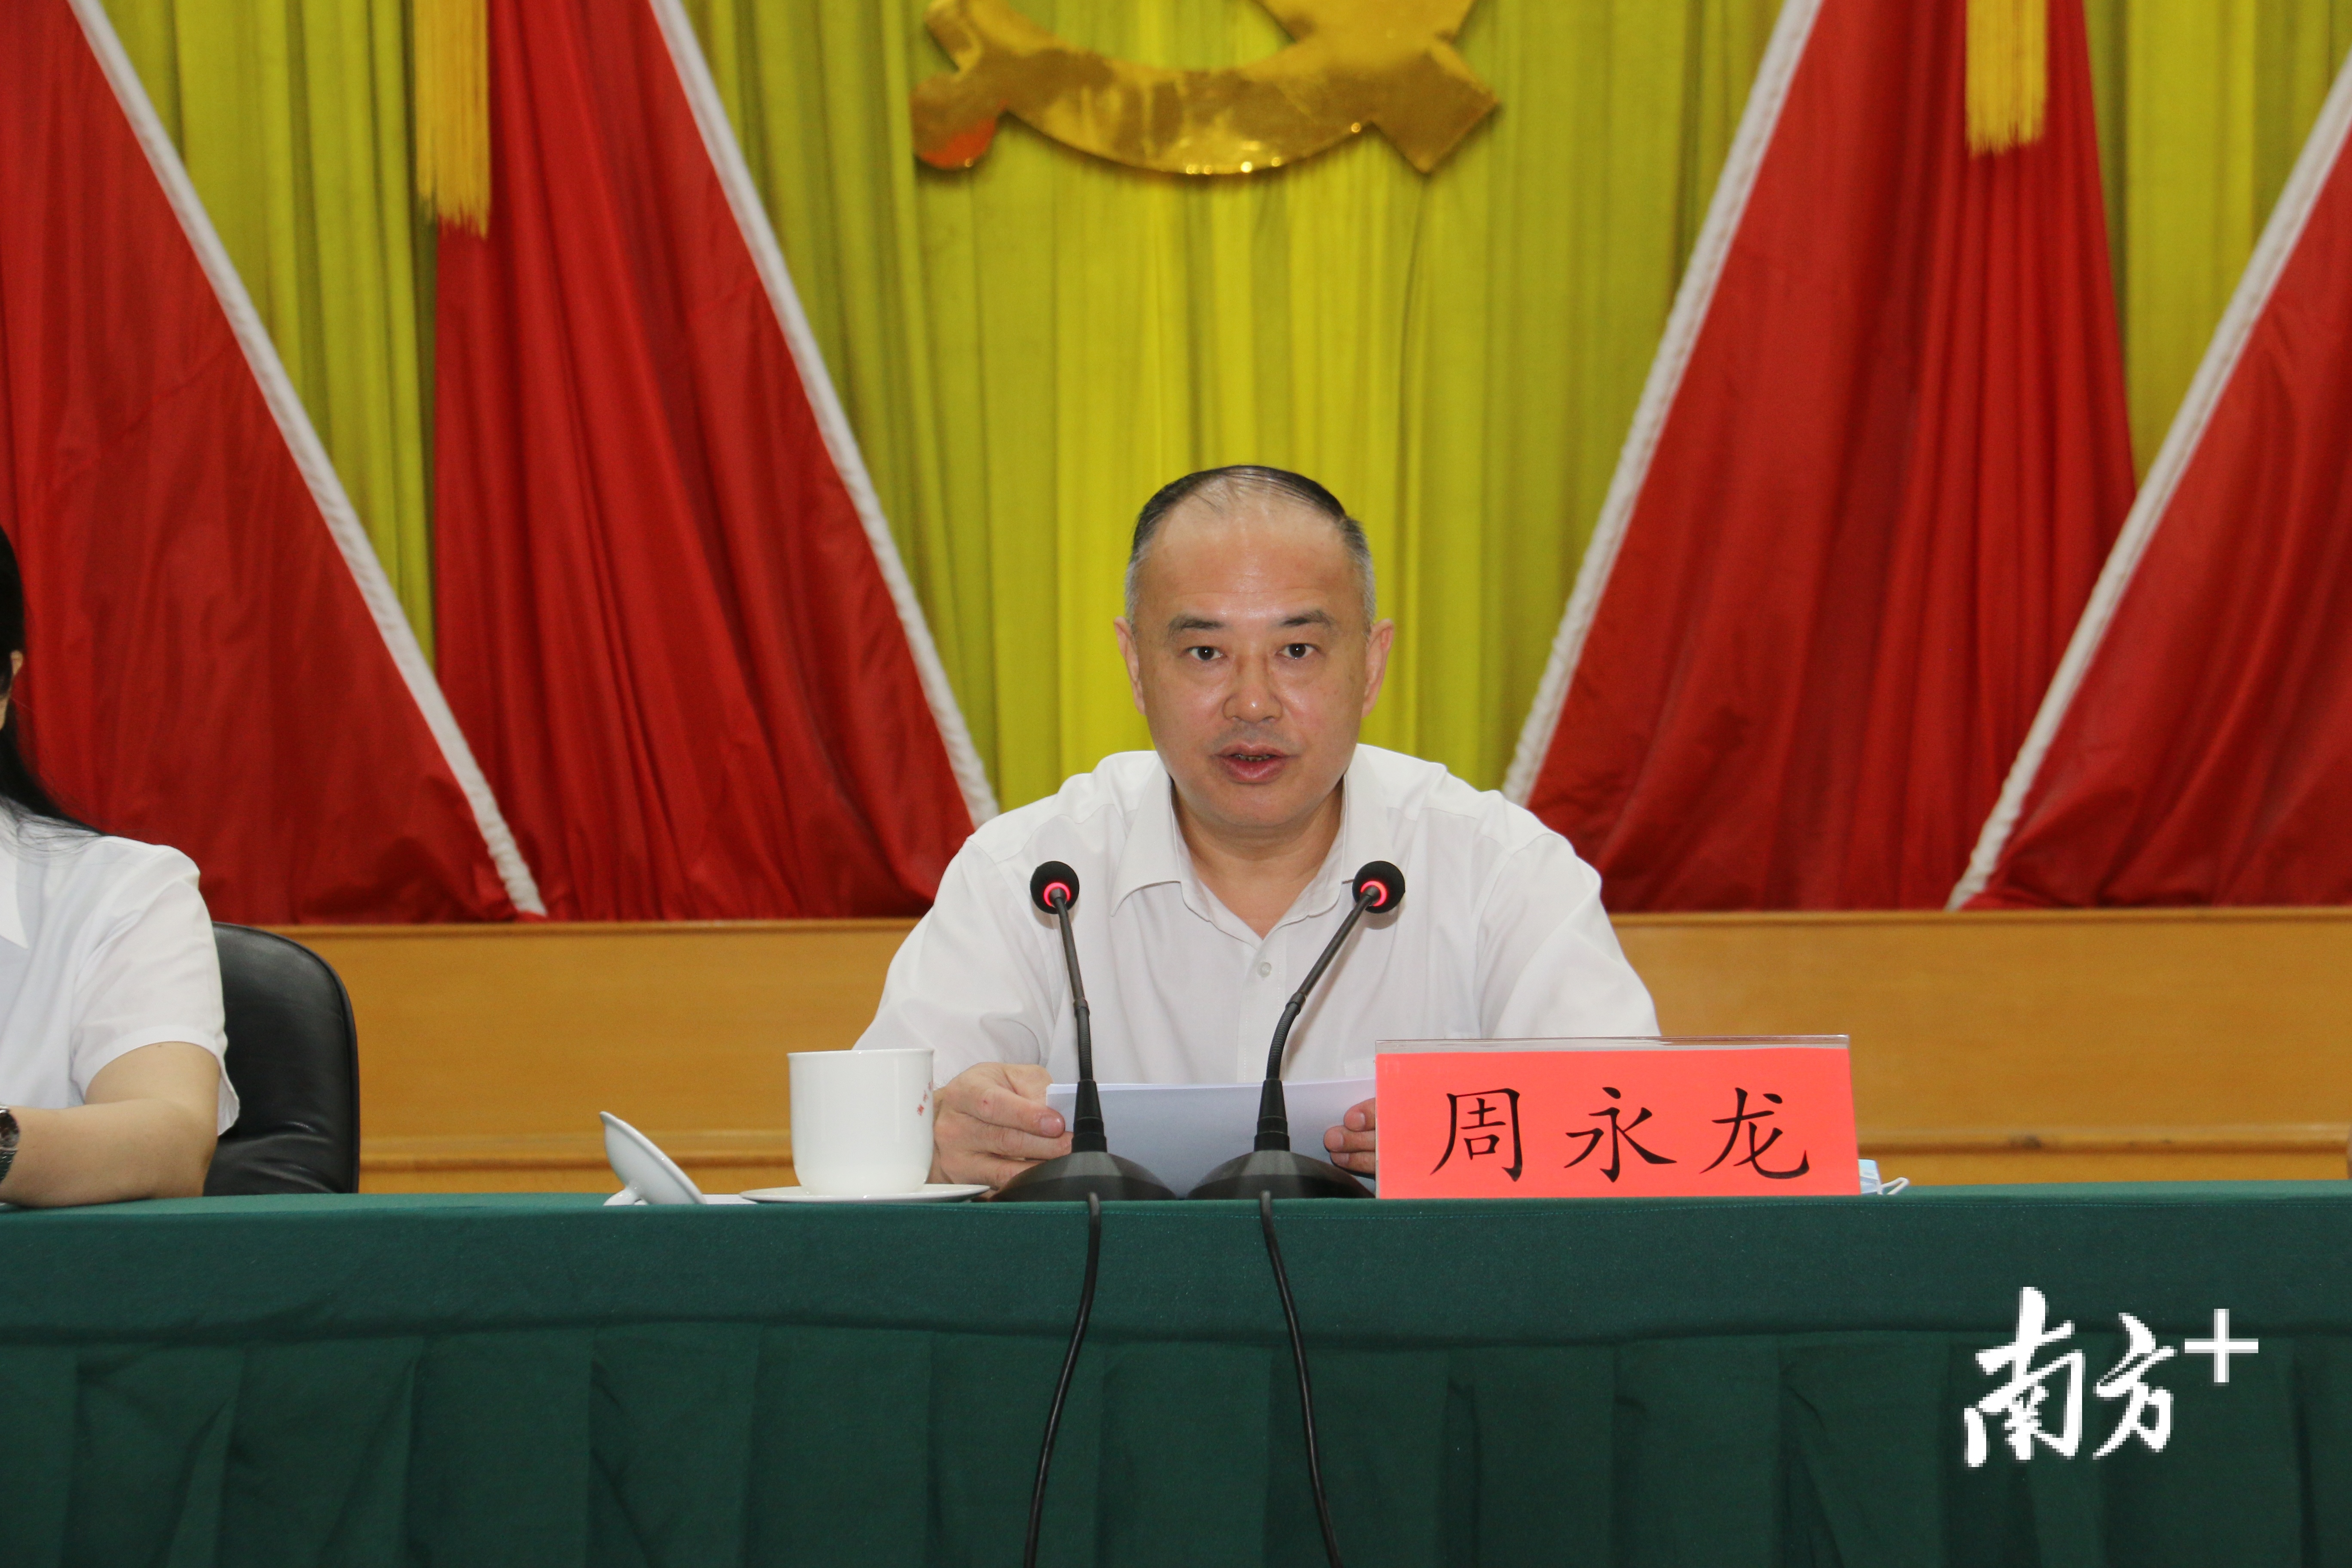 潮州市政协副主席、枫溪区委书记周永龙发表讲话。